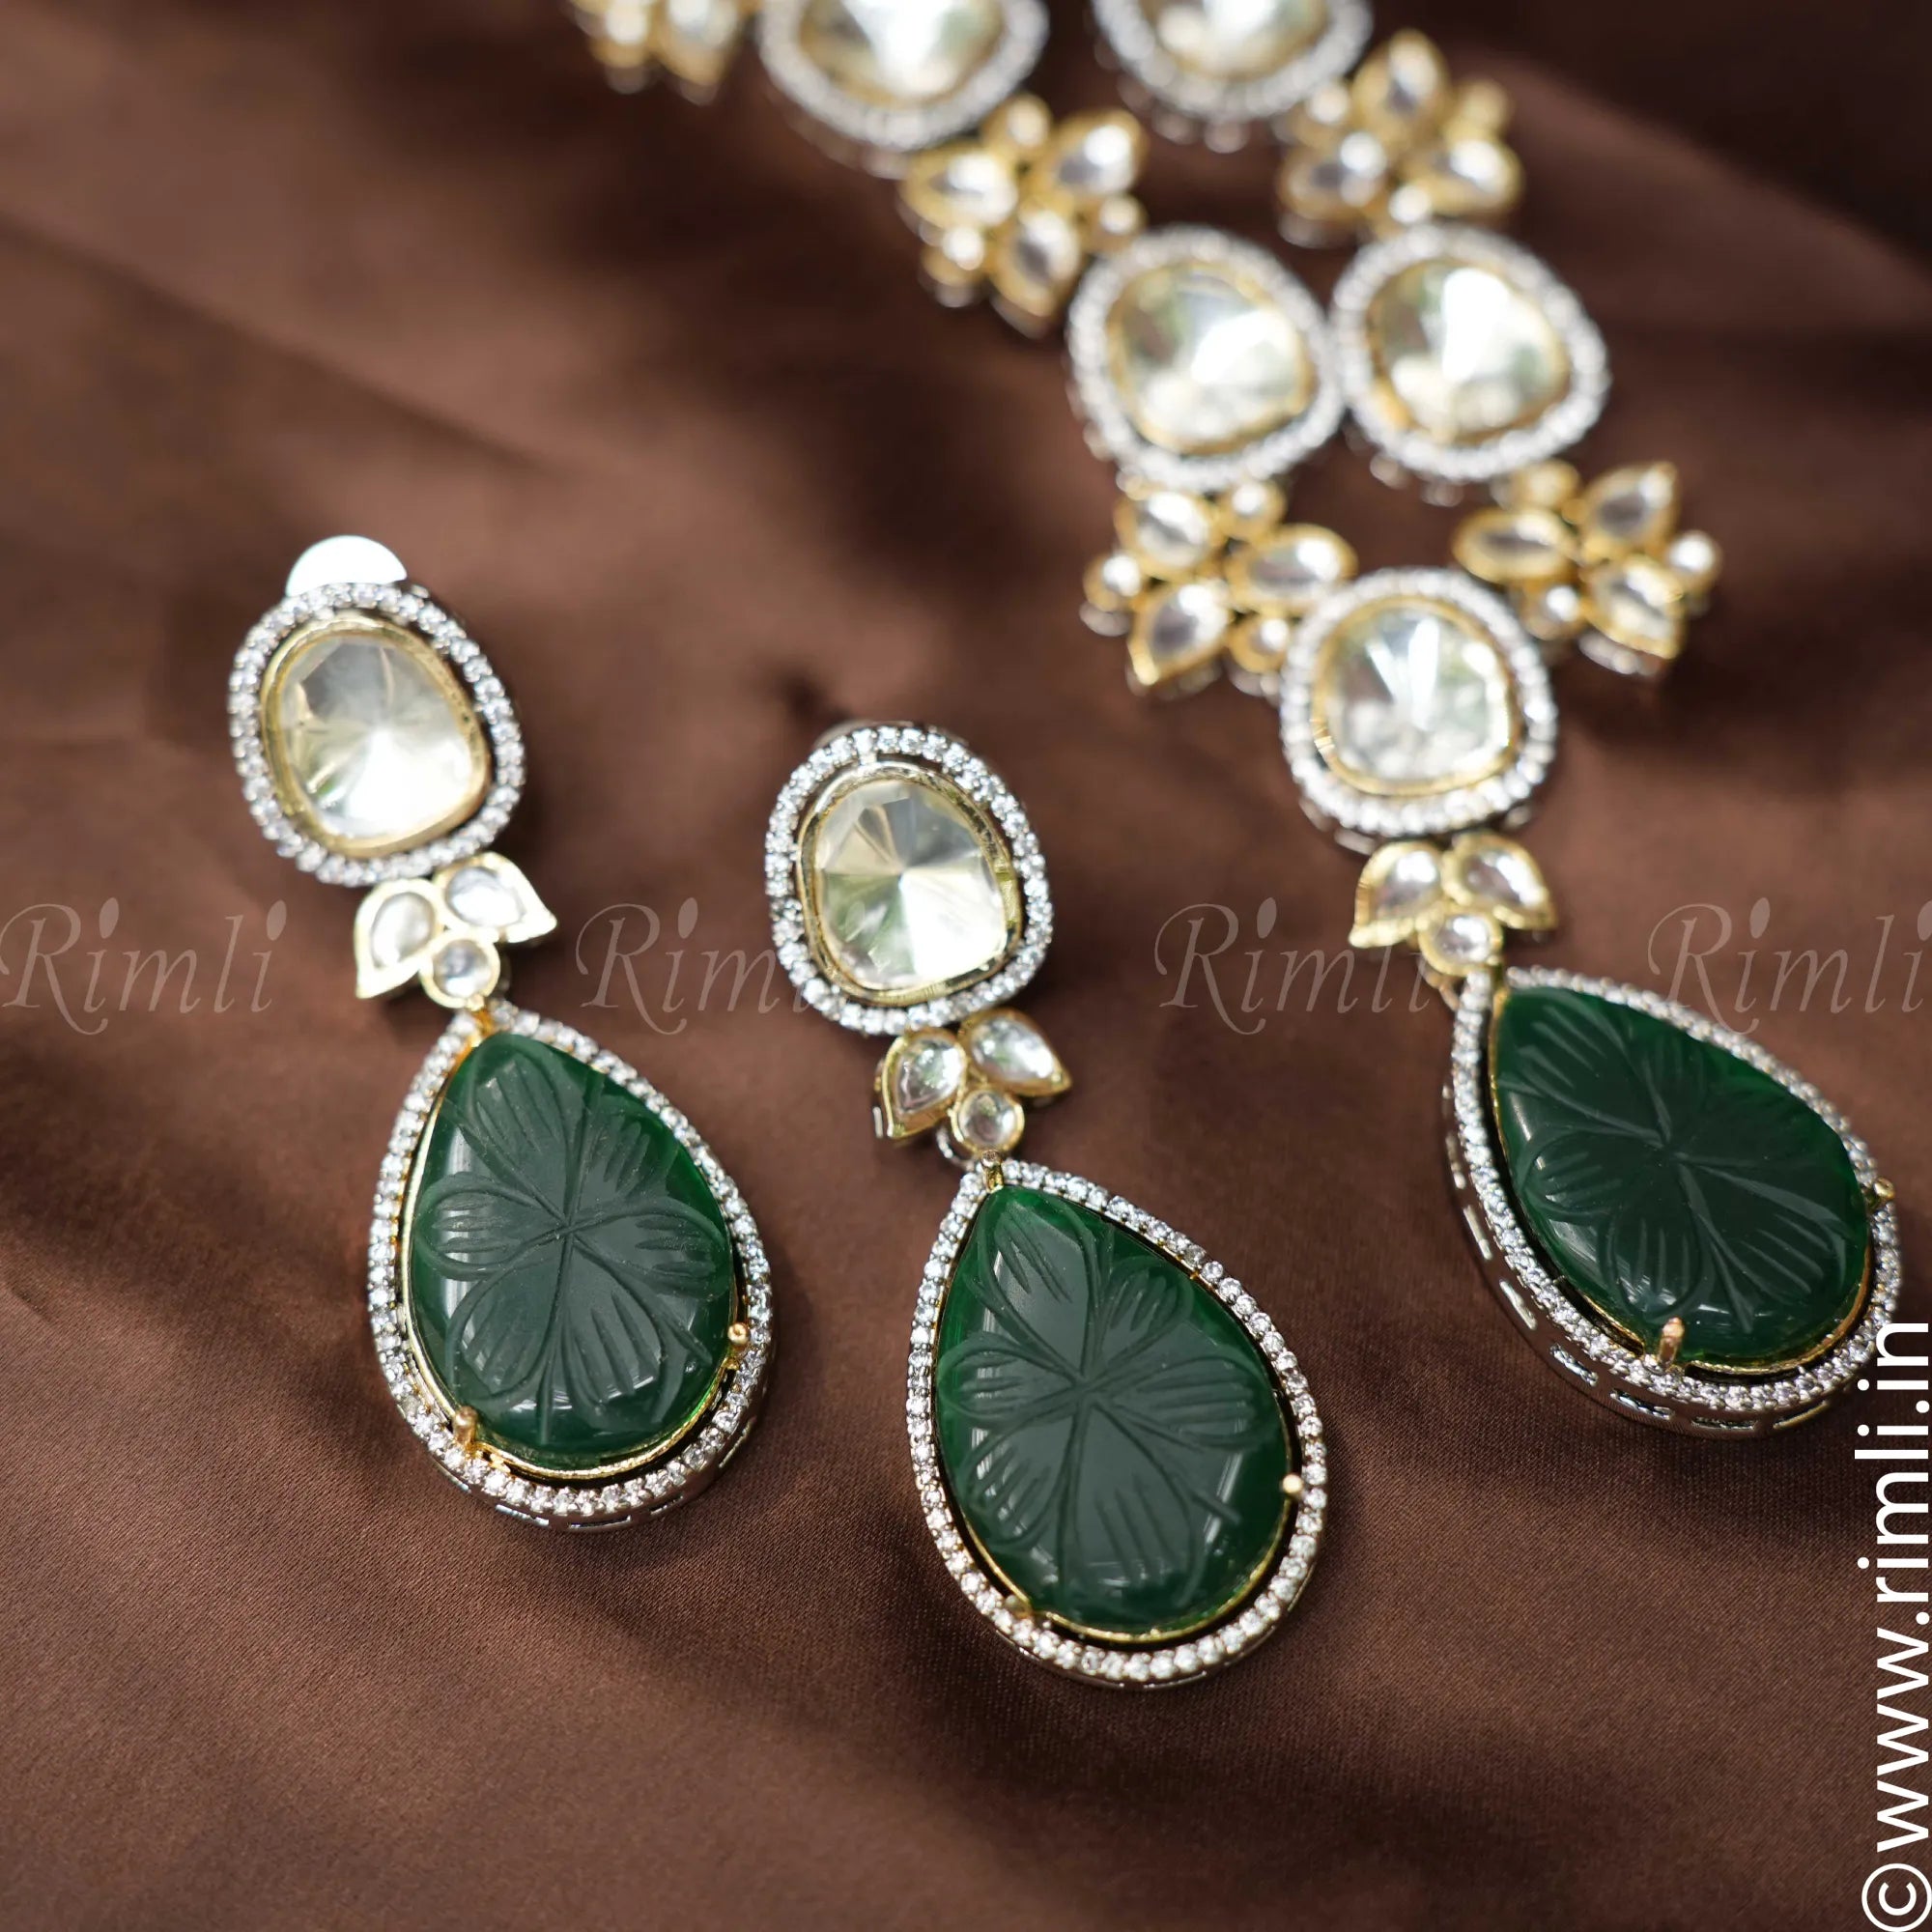 Aruna Victorian Kundan Necklace - Green